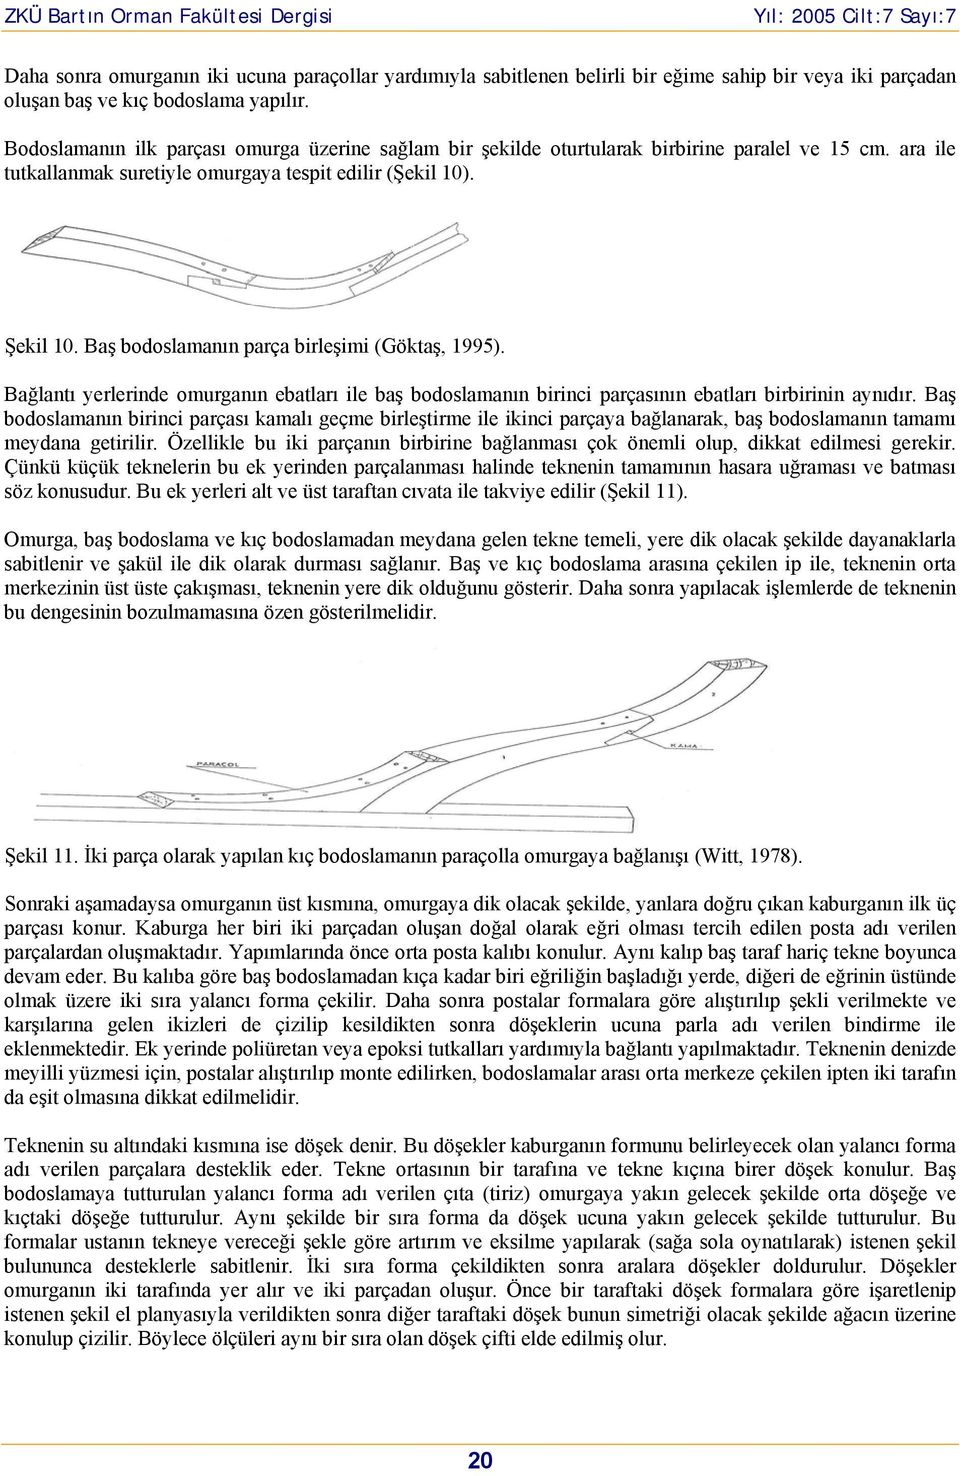 Baş bodoslamanın parça birleşimi (Göktaş, 1995). Bağlantı yerlerinde omurganın ebatları ile baş bodoslamanın birinci parçasının ebatları birbirinin aynıdır.